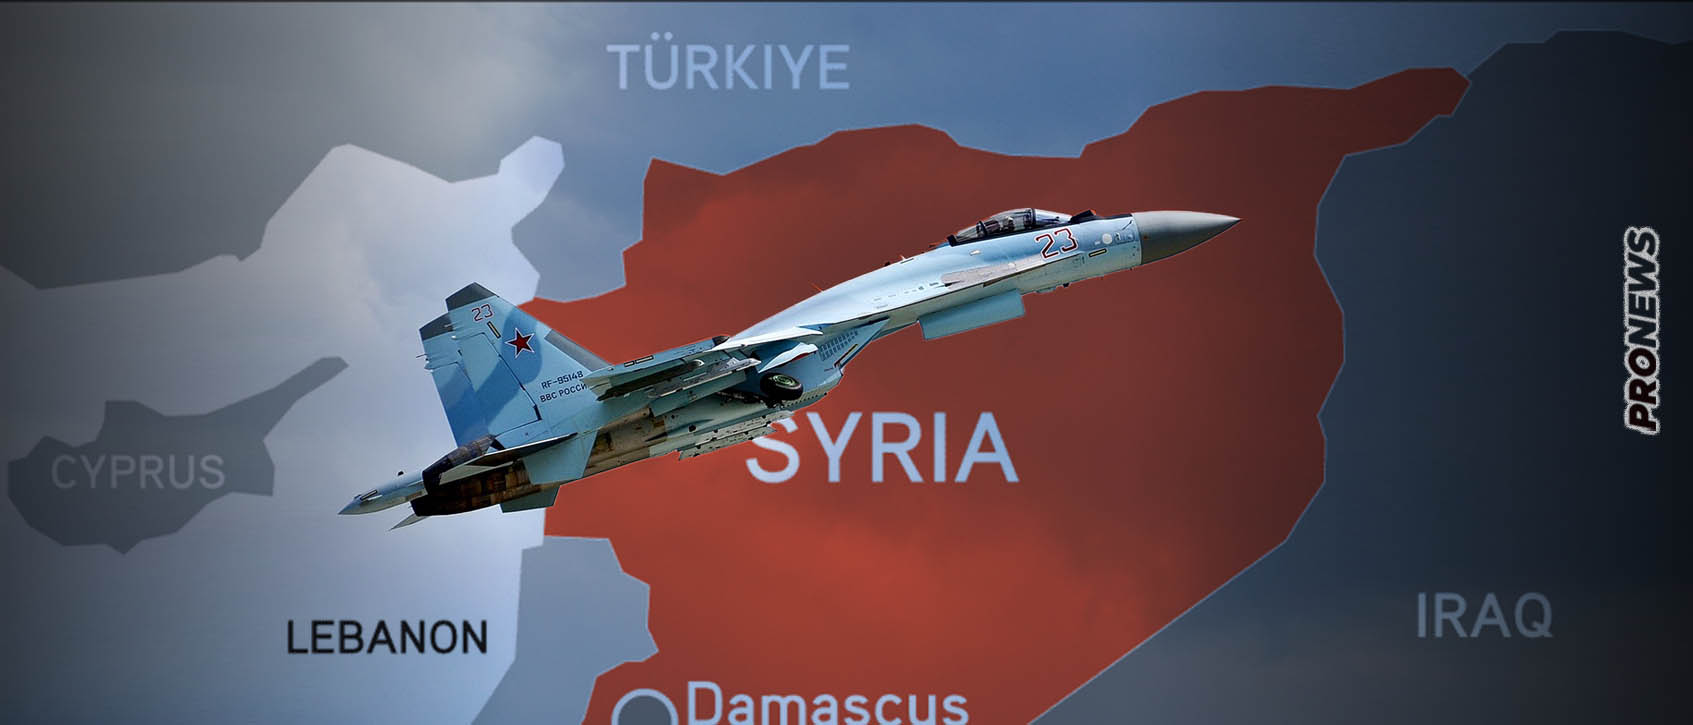 Συρία: Δεύτερο πολεμικό επεισόδιο μεταξύ ρωσικών μαχητικών και αμερικανικών Predator B μέσα σε 24 ώρες